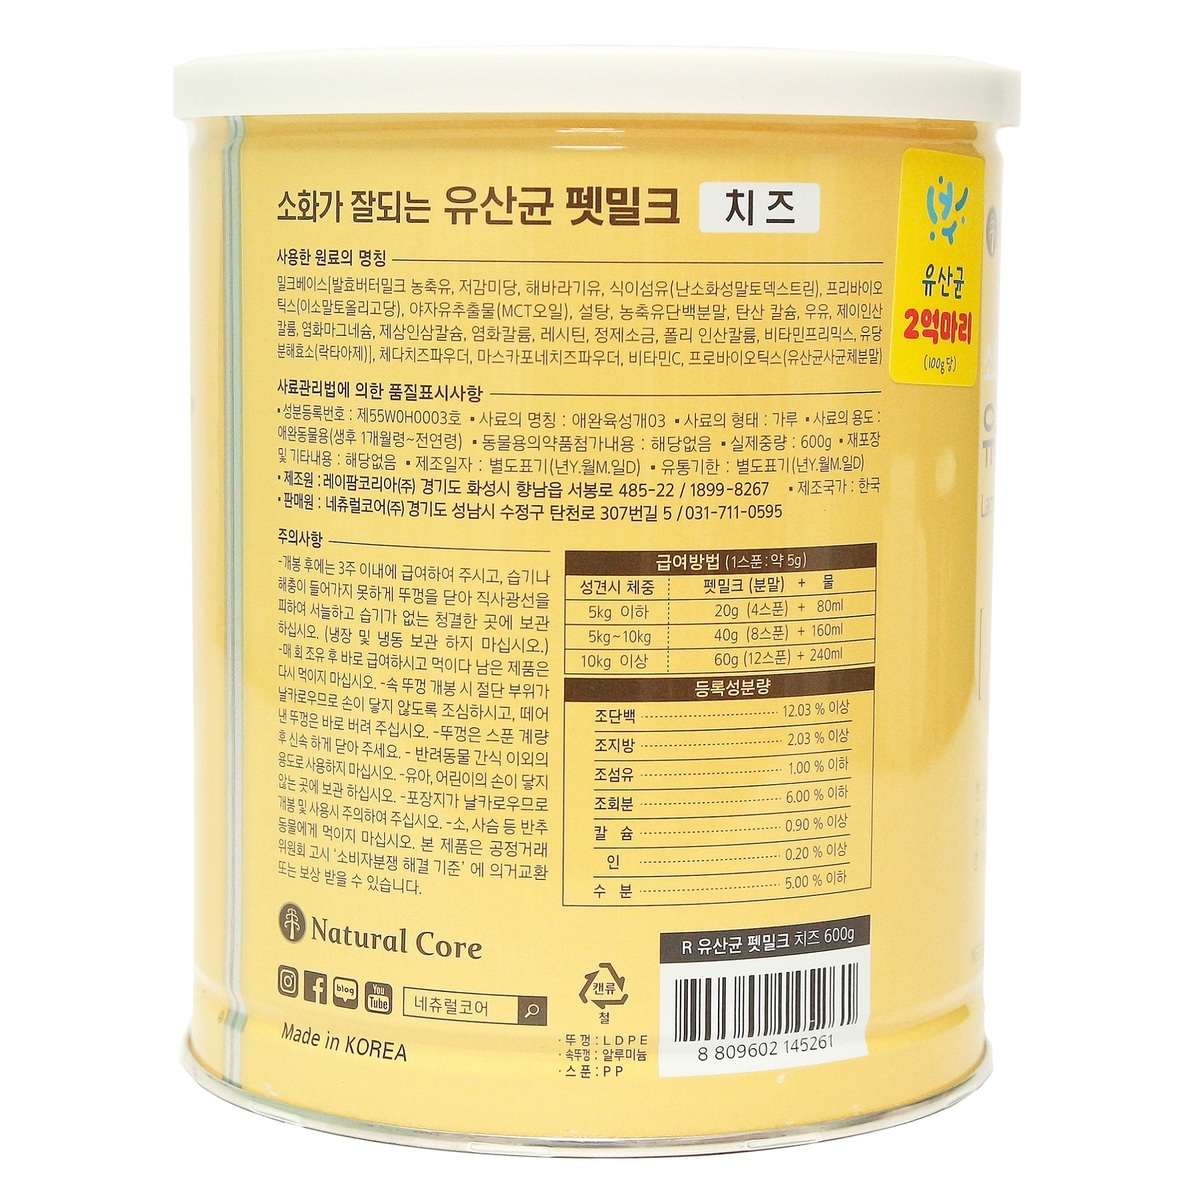 네츄럴 코어 유산균 펫밀크 파우더 600g - 치즈2